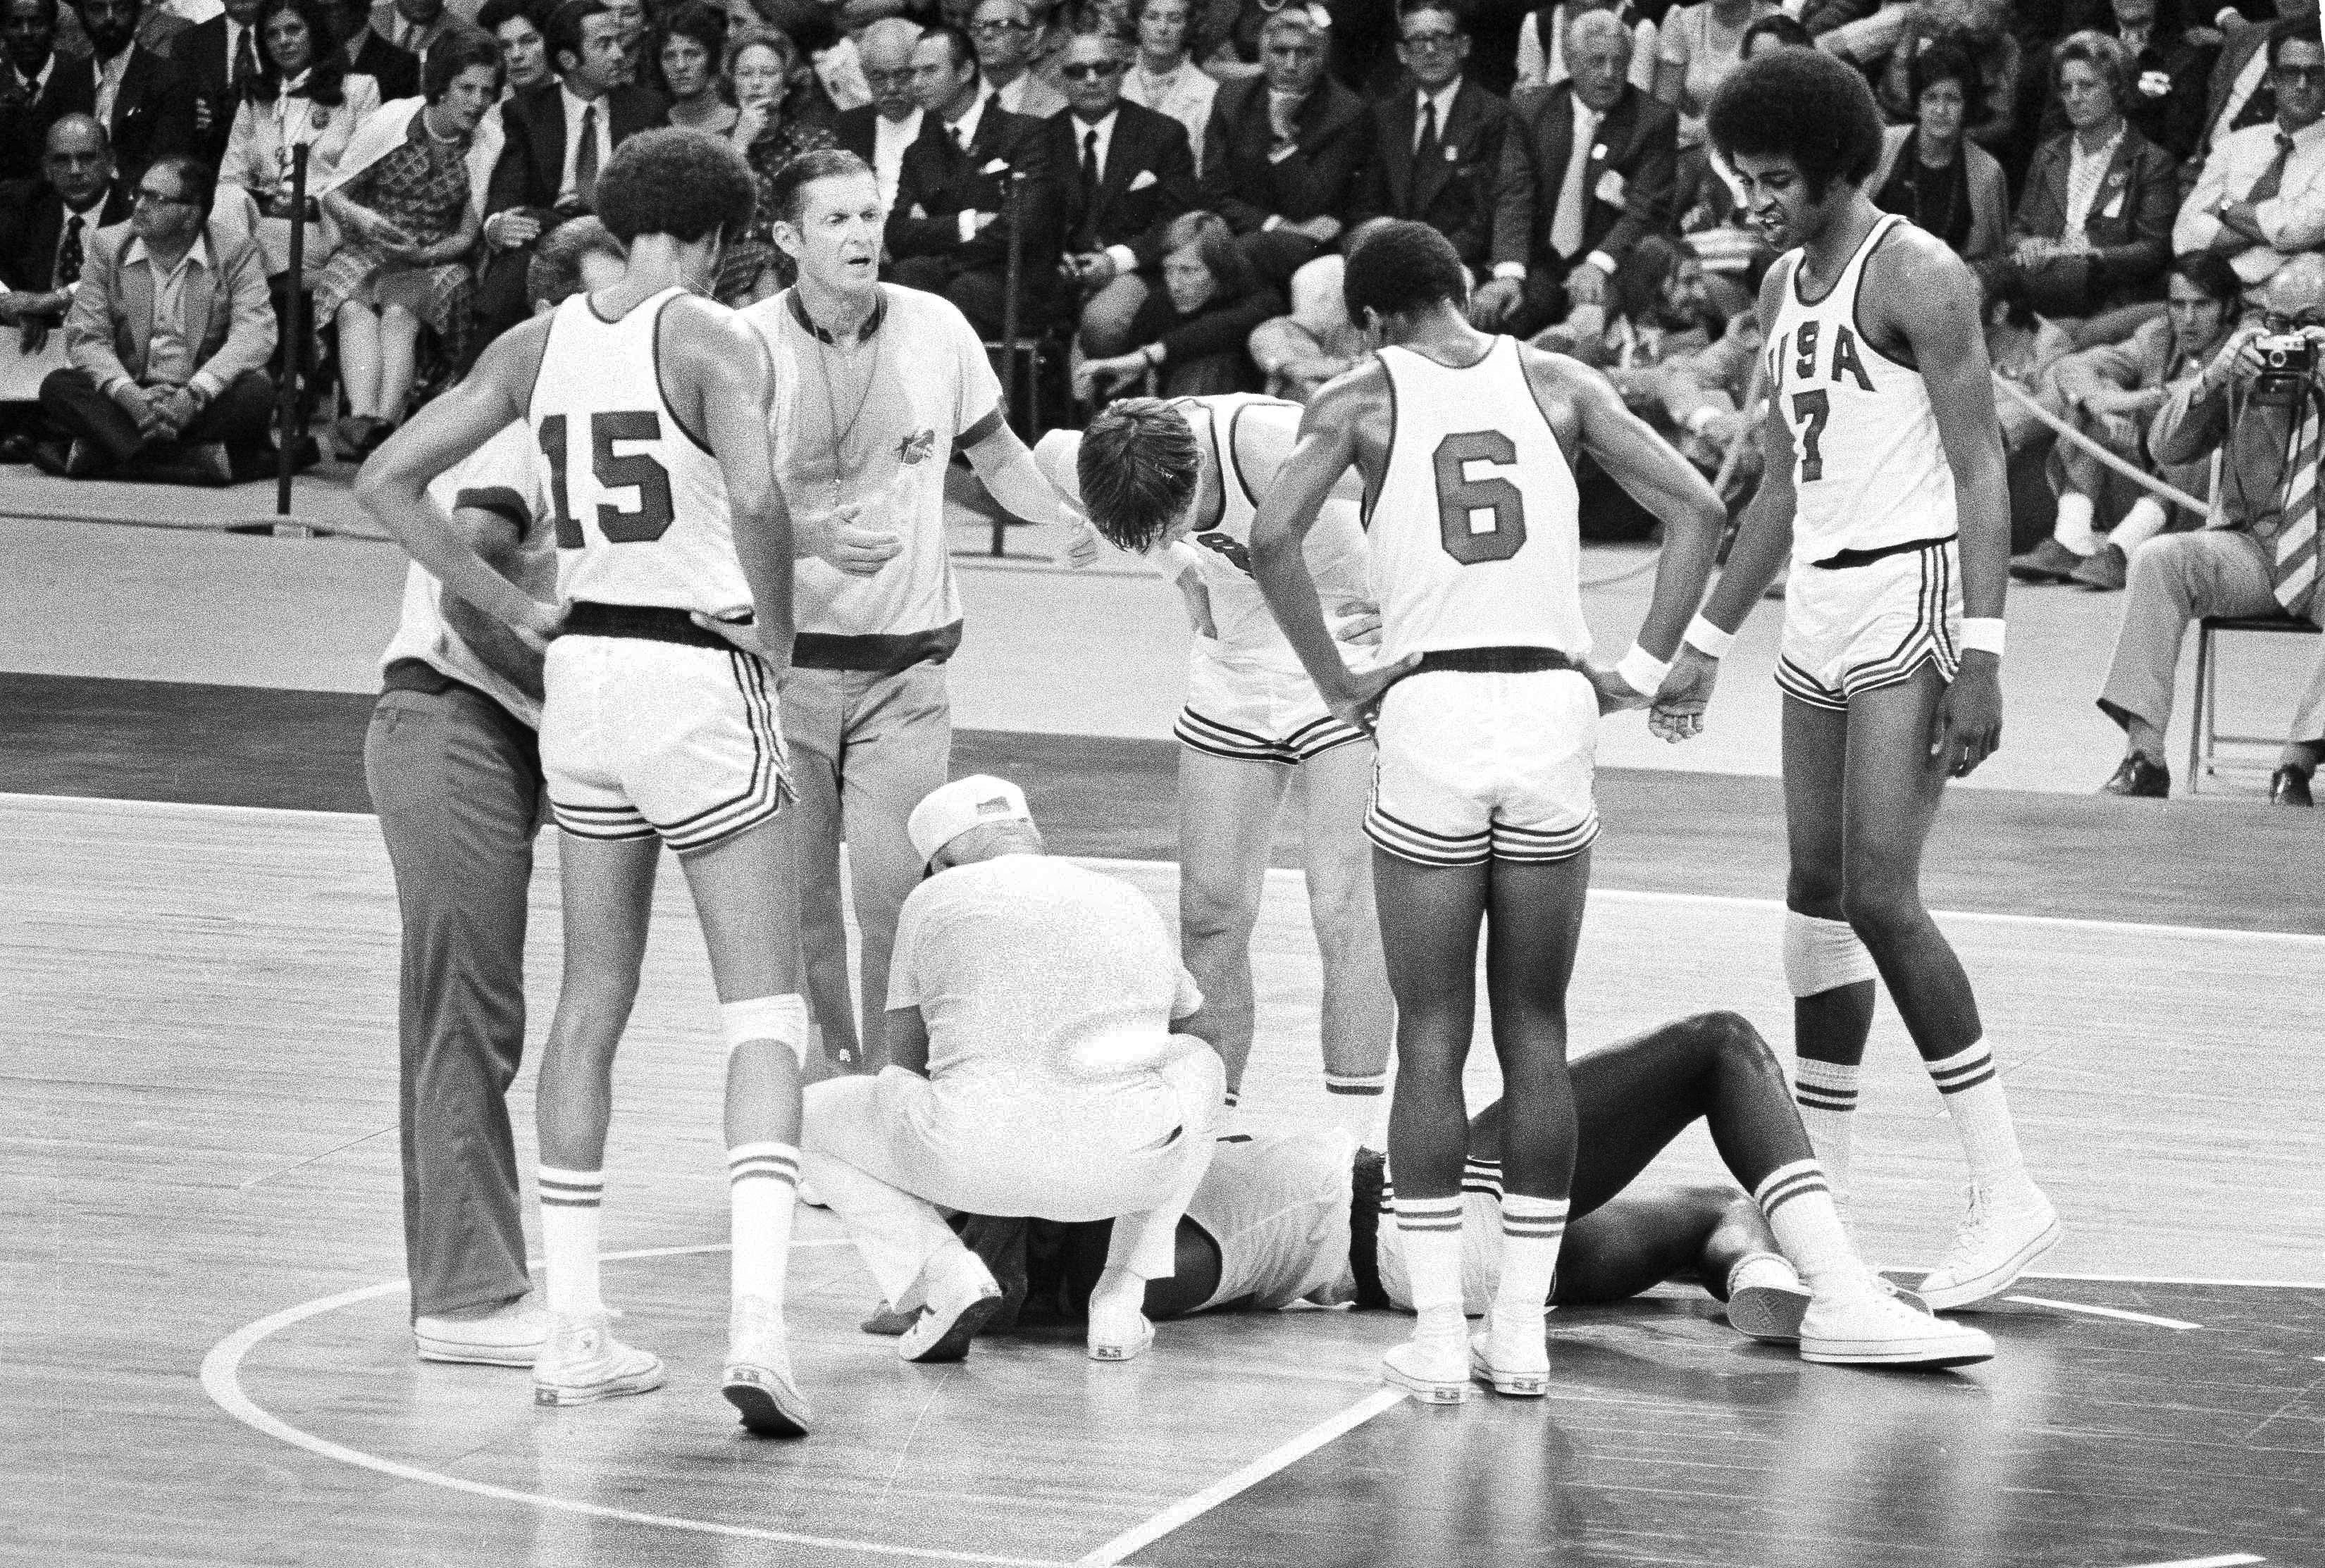 Игры 1972 баскетбол. Мюнхен 1972 баскетбол. СССР-США баскетбол 1972. Баскетбол Мюнхен 1972 сборная СССР.